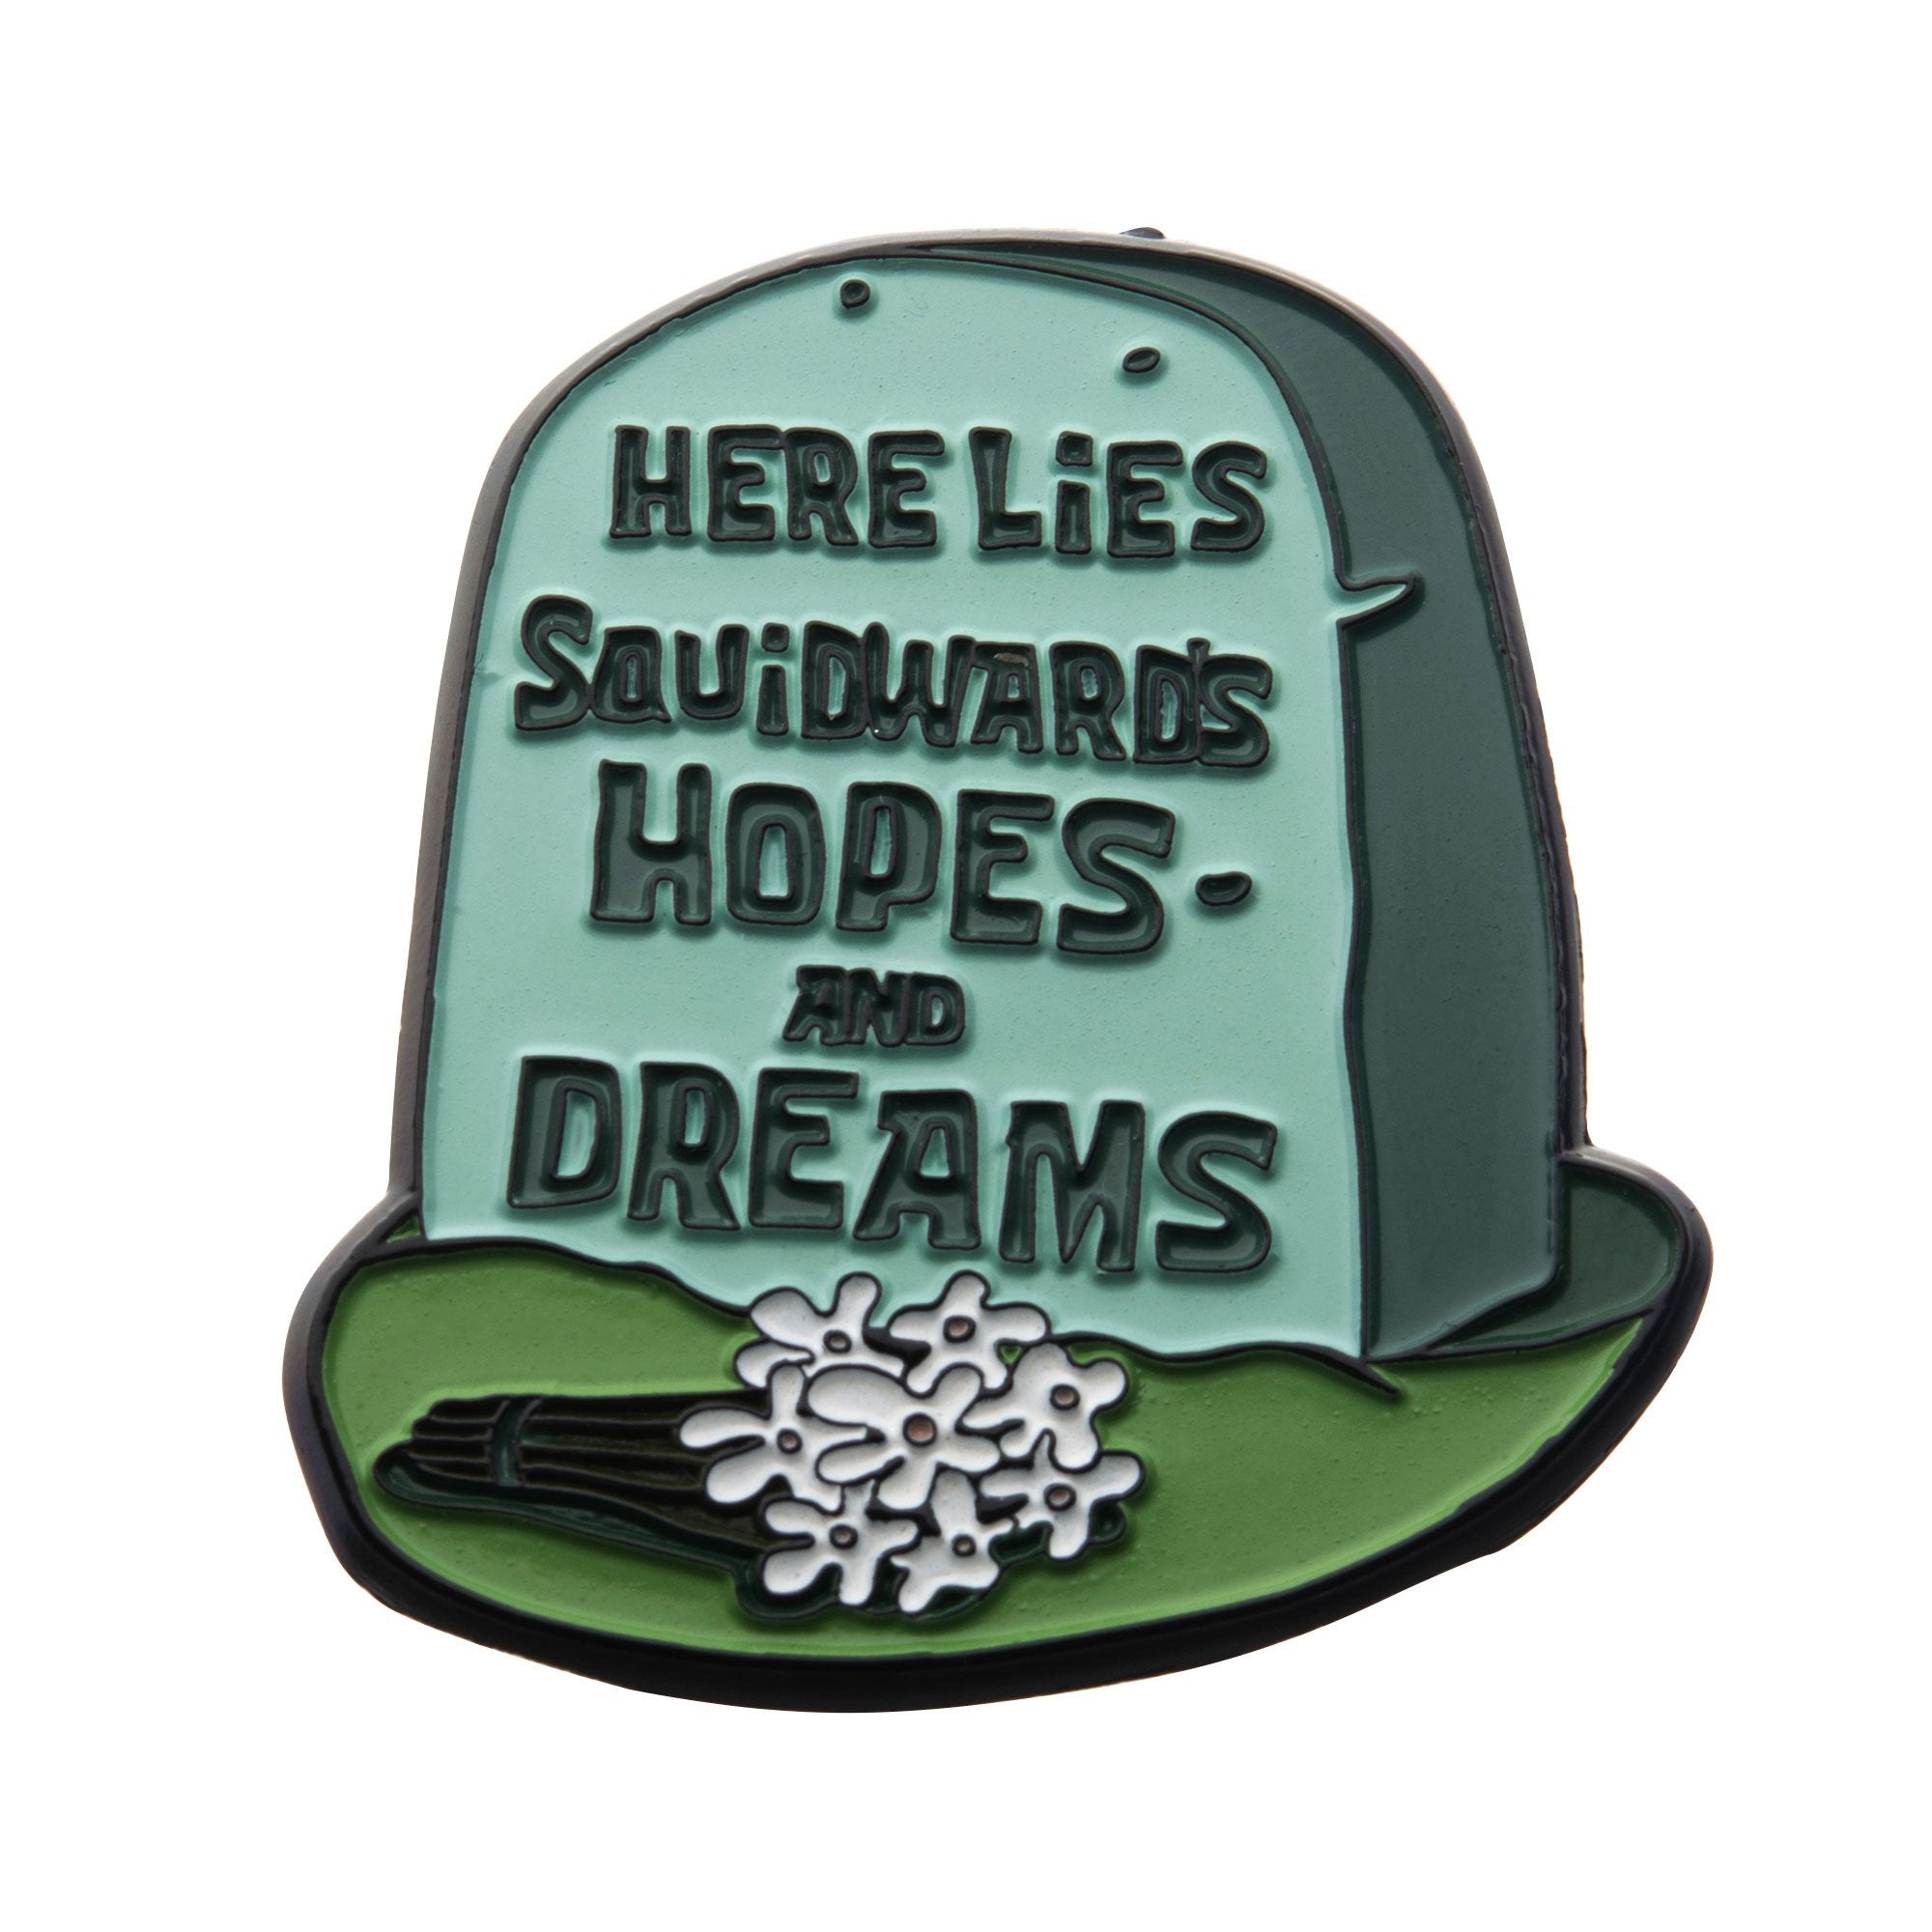 Nickelodeon Squidward's Hopes & Dreams Pin